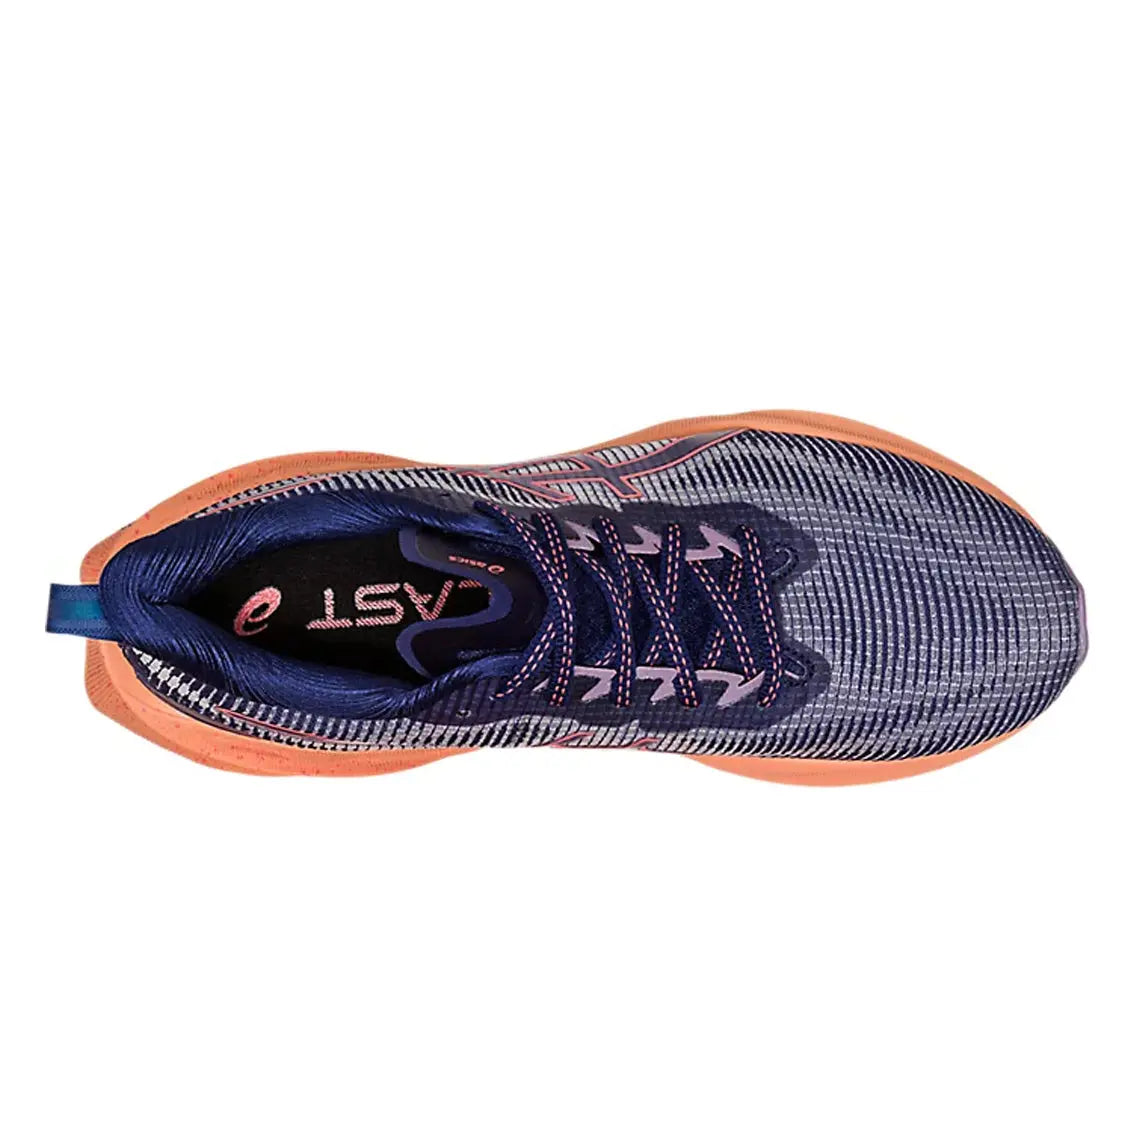  ASICS Women's NOVABLAST 3 LE Running Shoes, 5, Indigo  Blue/Papaya